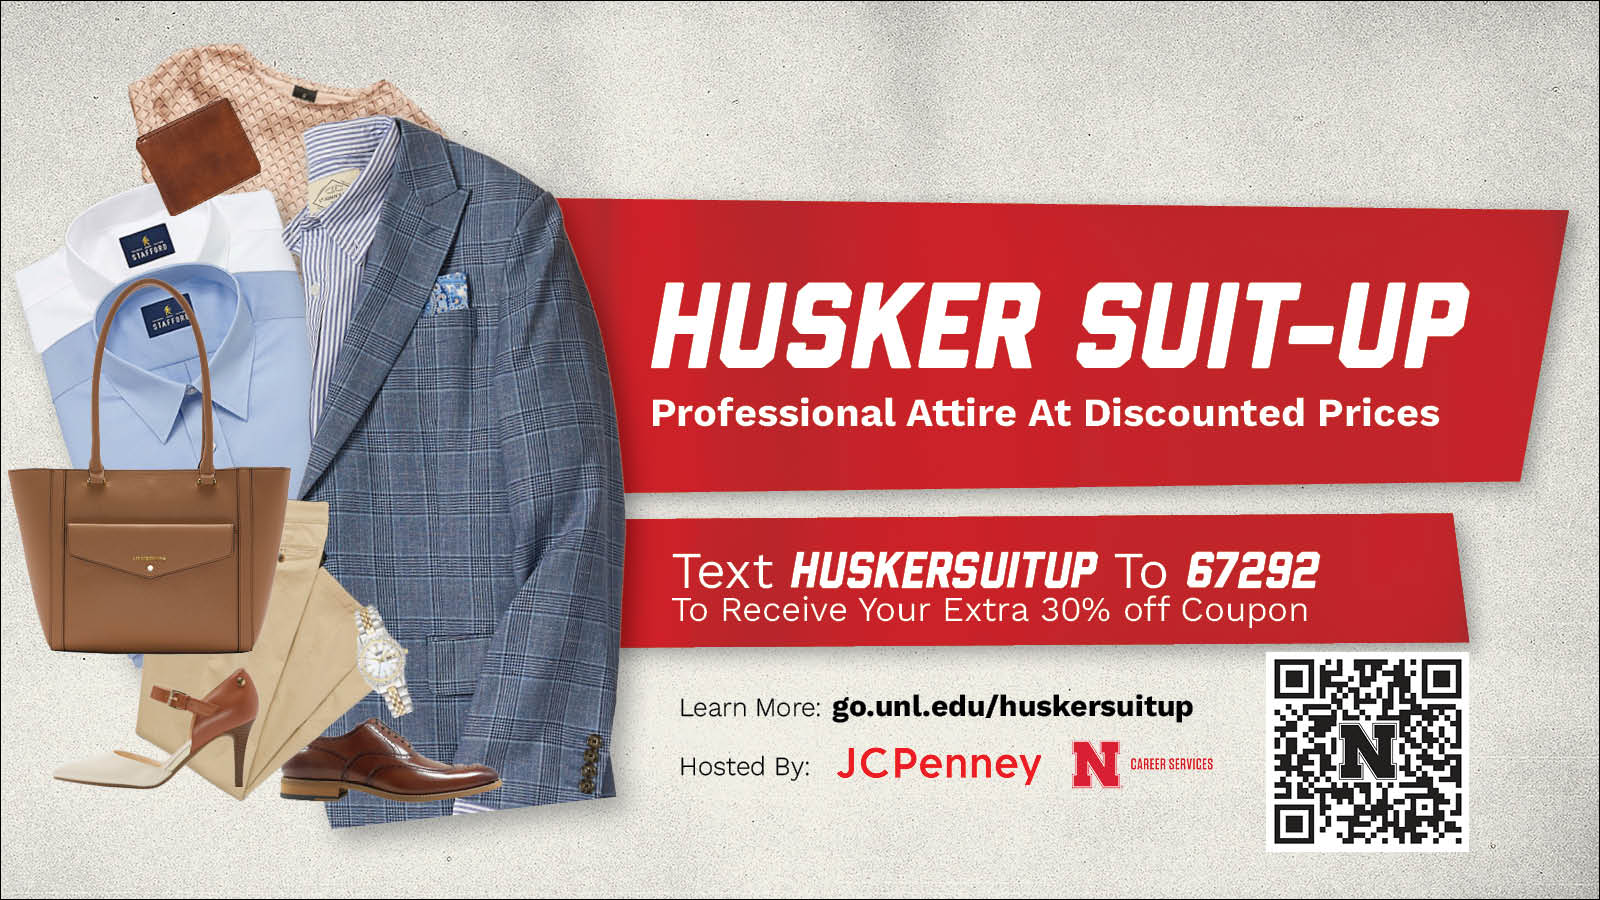 Husker Suitup Digital Signage with QR code.jpg